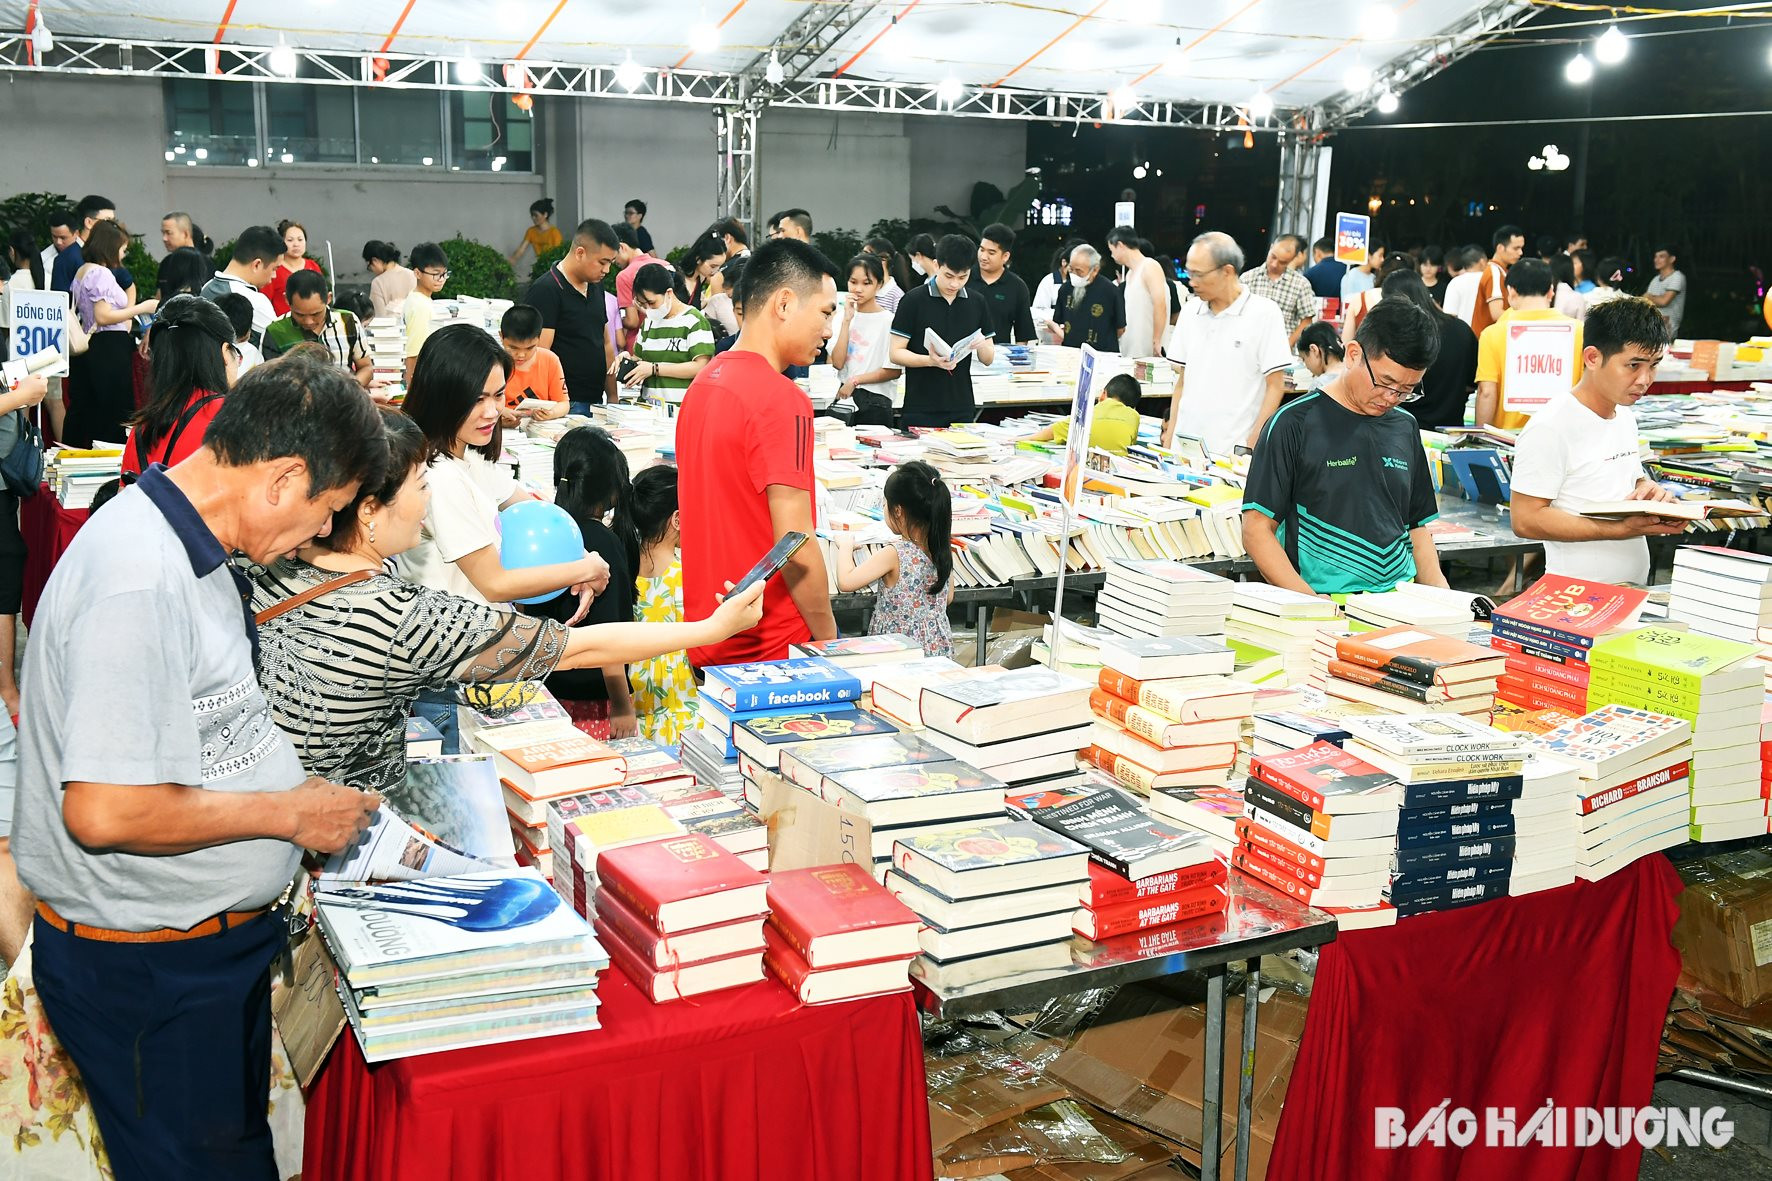 Phố đi bộ, chợ đêm Bạch Đằng tuần này còn tổ chức hội chợ sách